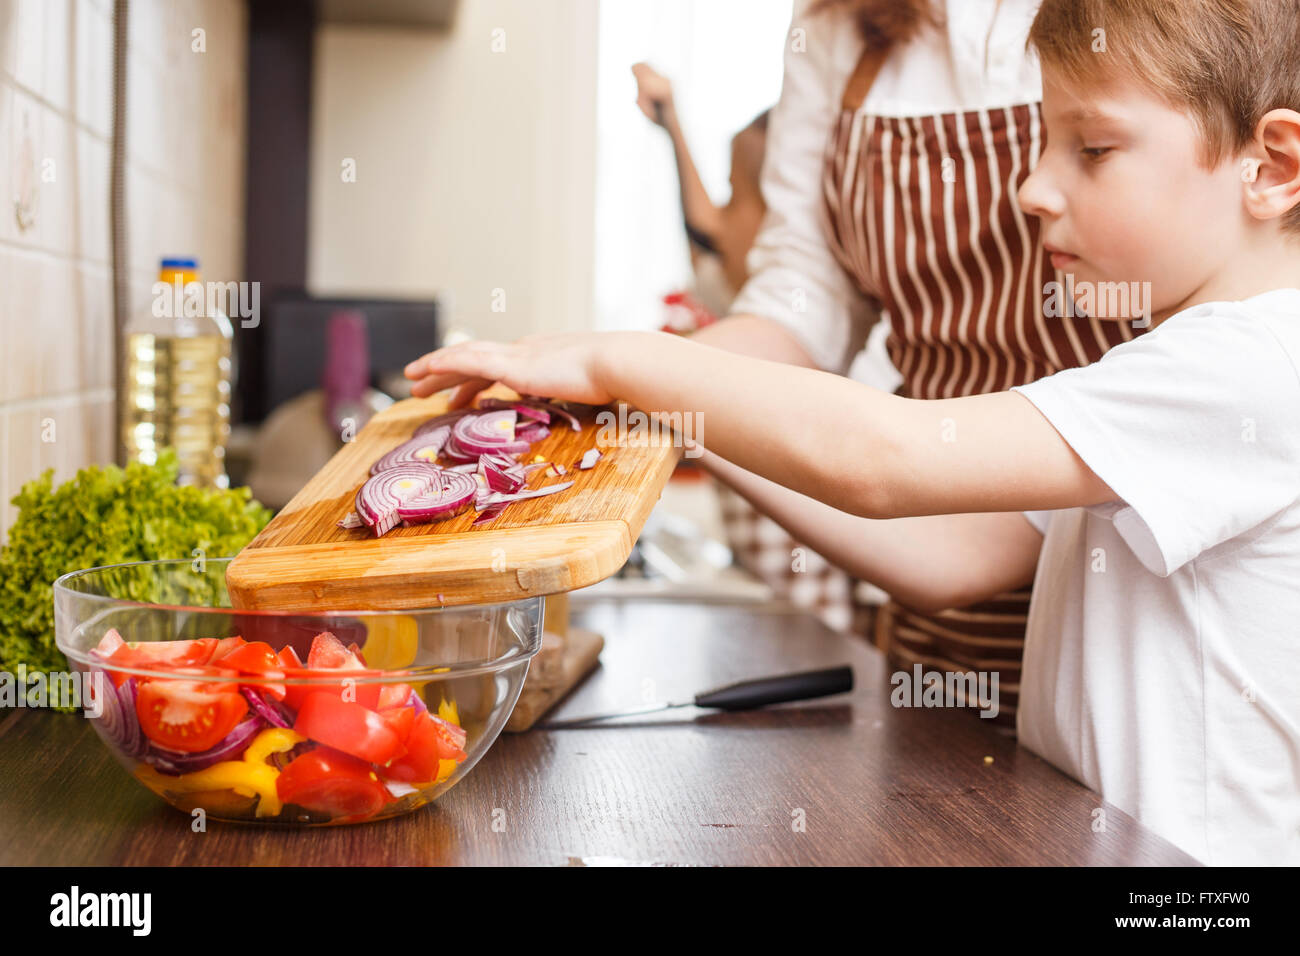 Arrière-plan de cuisine familiale. Petit garçon aider sa mère avec l'oignon coupe pour la salade dans la cuisine Banque D'Images